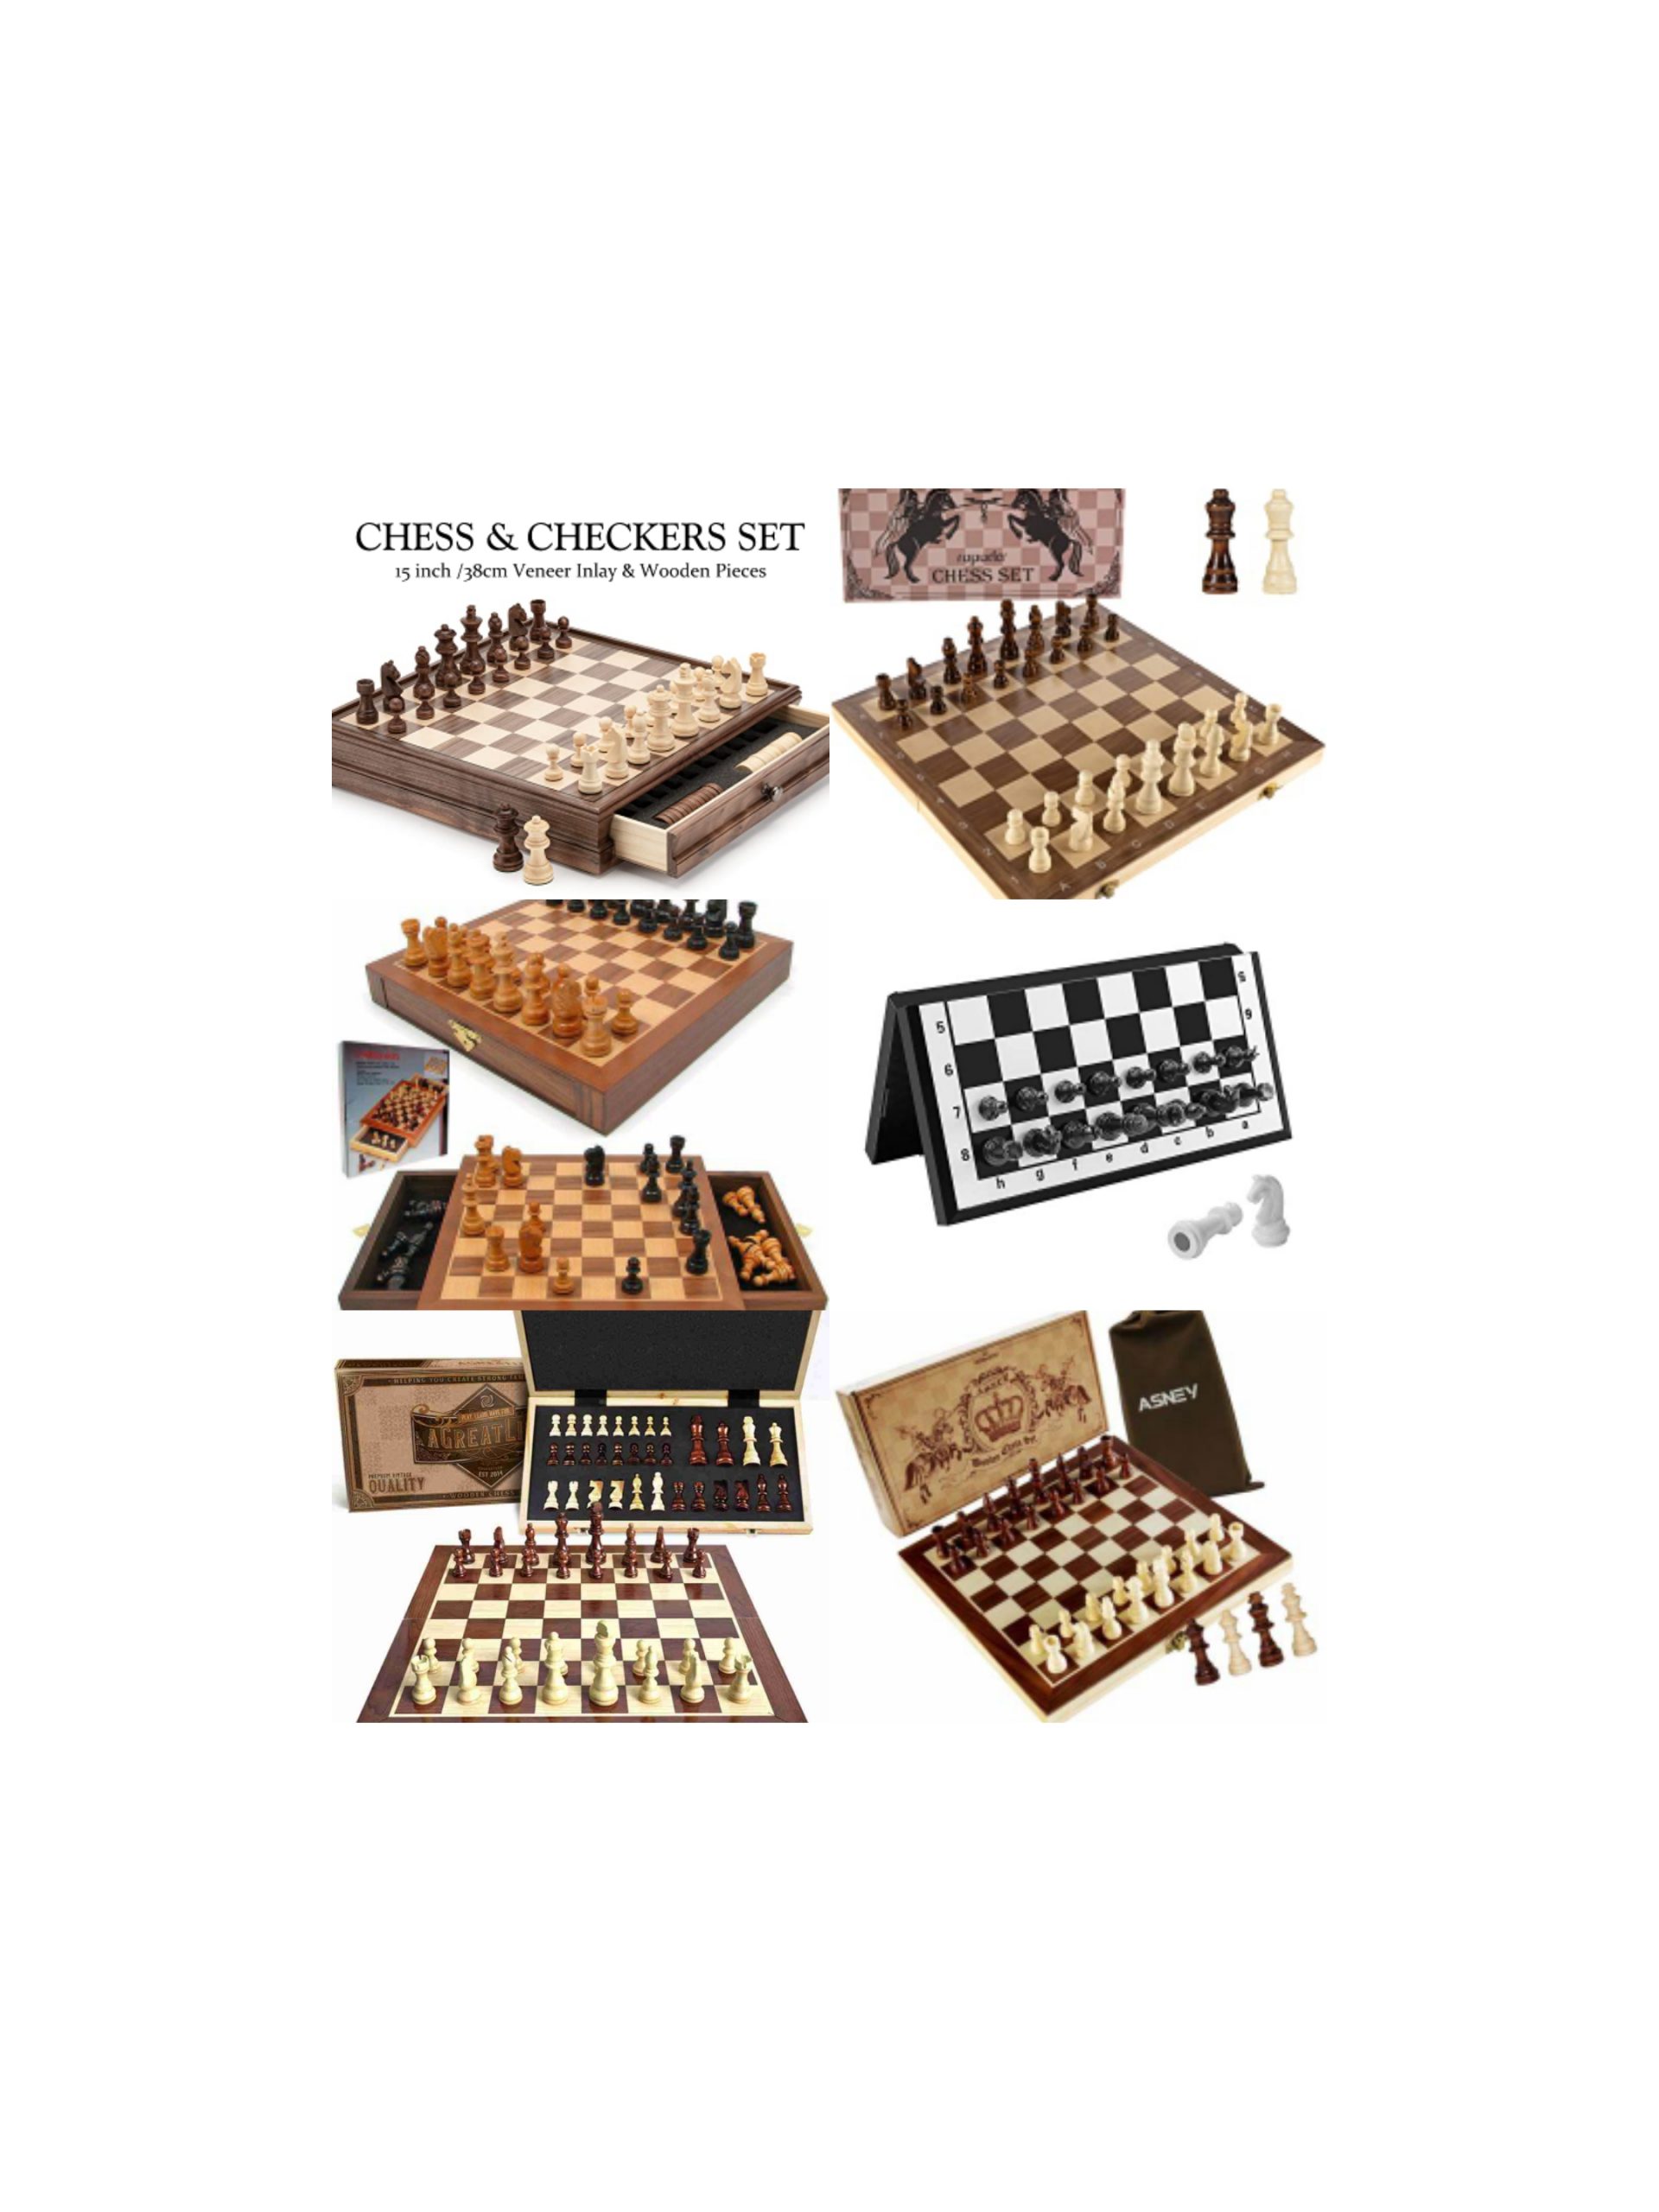 10 Best Chess Sets Under $100